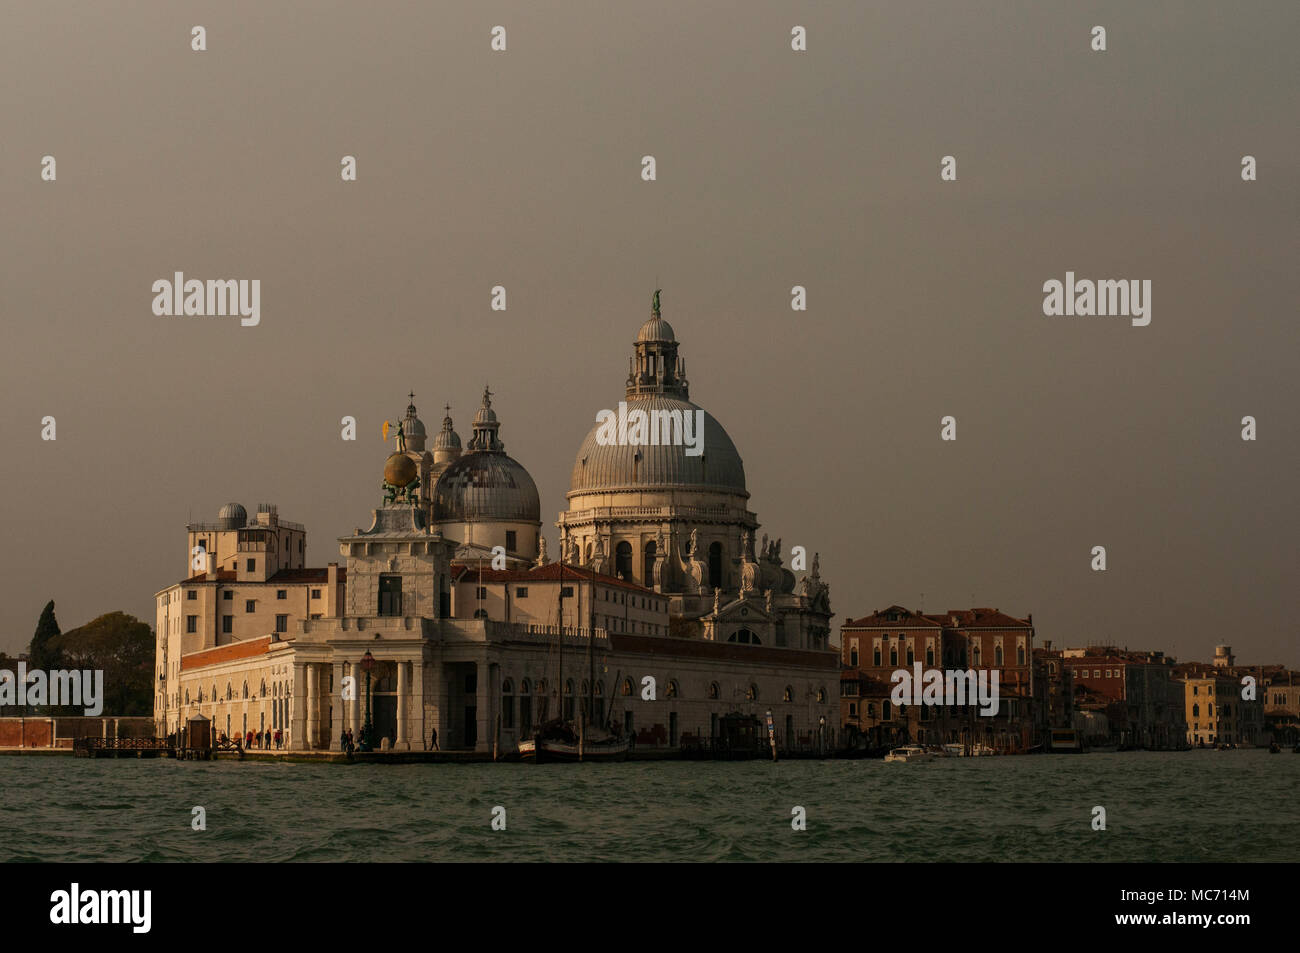 The Basilica Santa Maria della Salute, Grand Canal, Venice, Italy Stock Photo